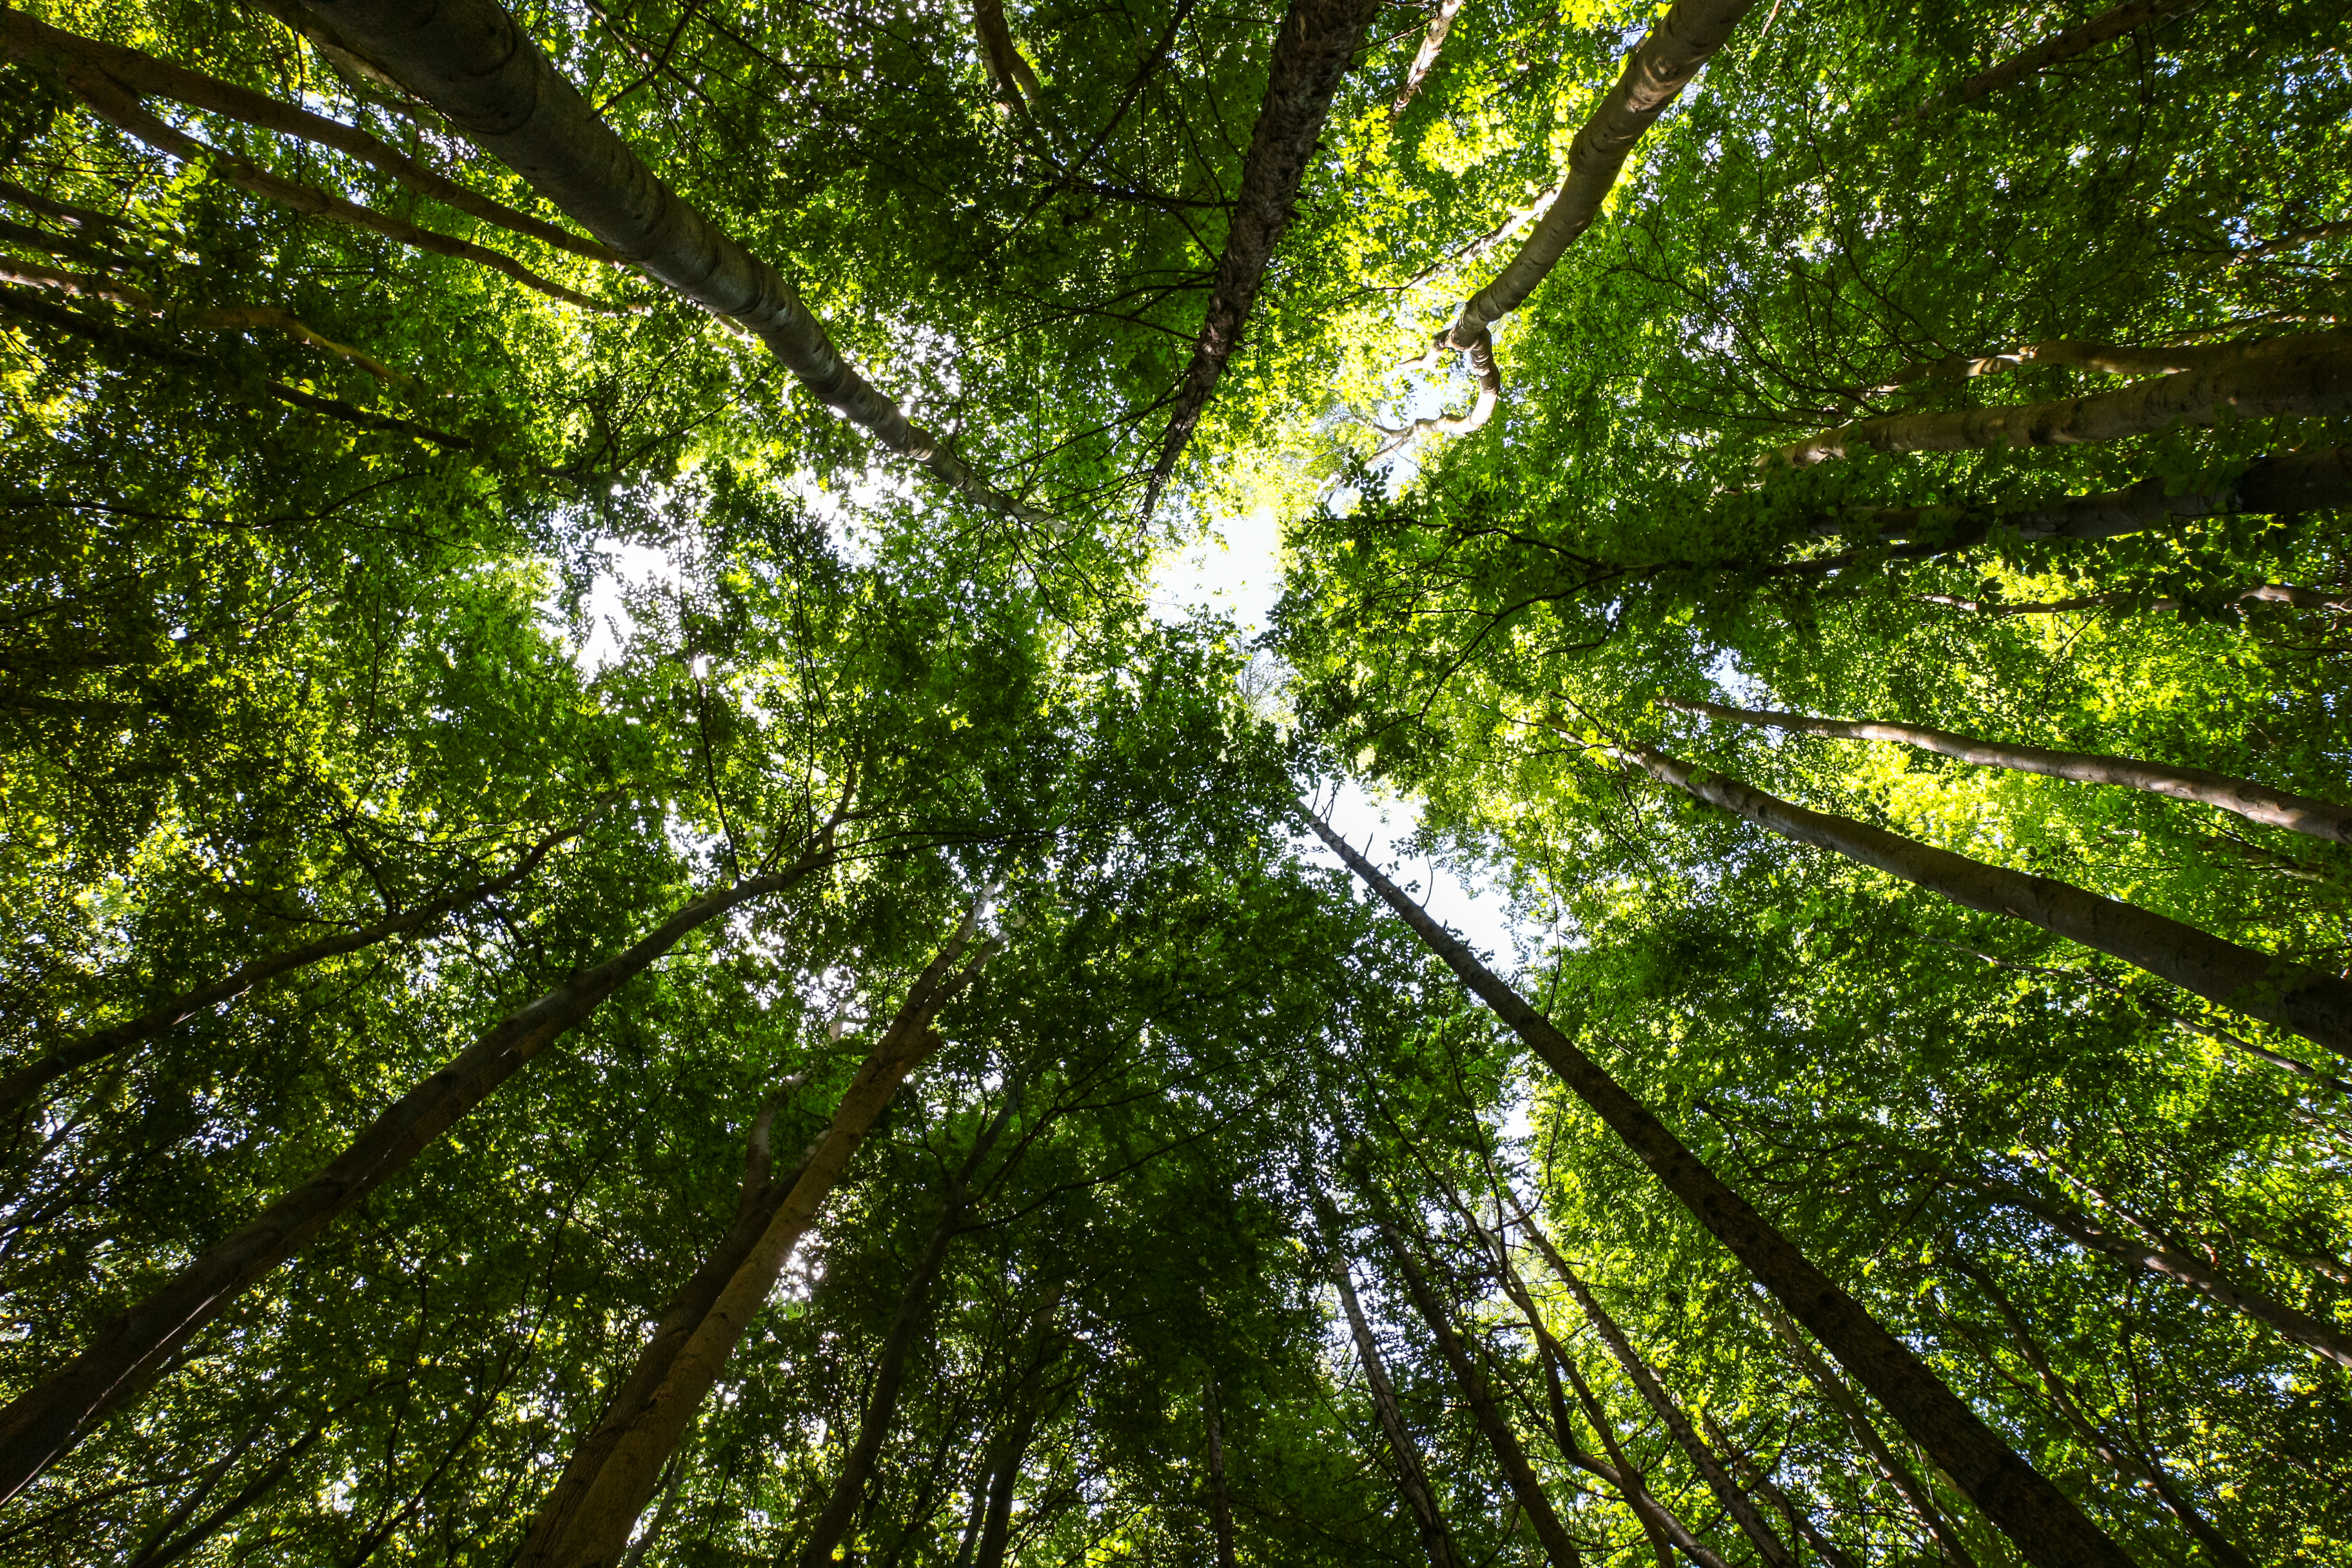 Sonderbericht 21/2021: EU-Förderung für biologische Vielfalt und Anpassung an den Klimawandel in den Wäldern der EU: Ergebnisse sind positiv, aber von begrenzter Reichweite